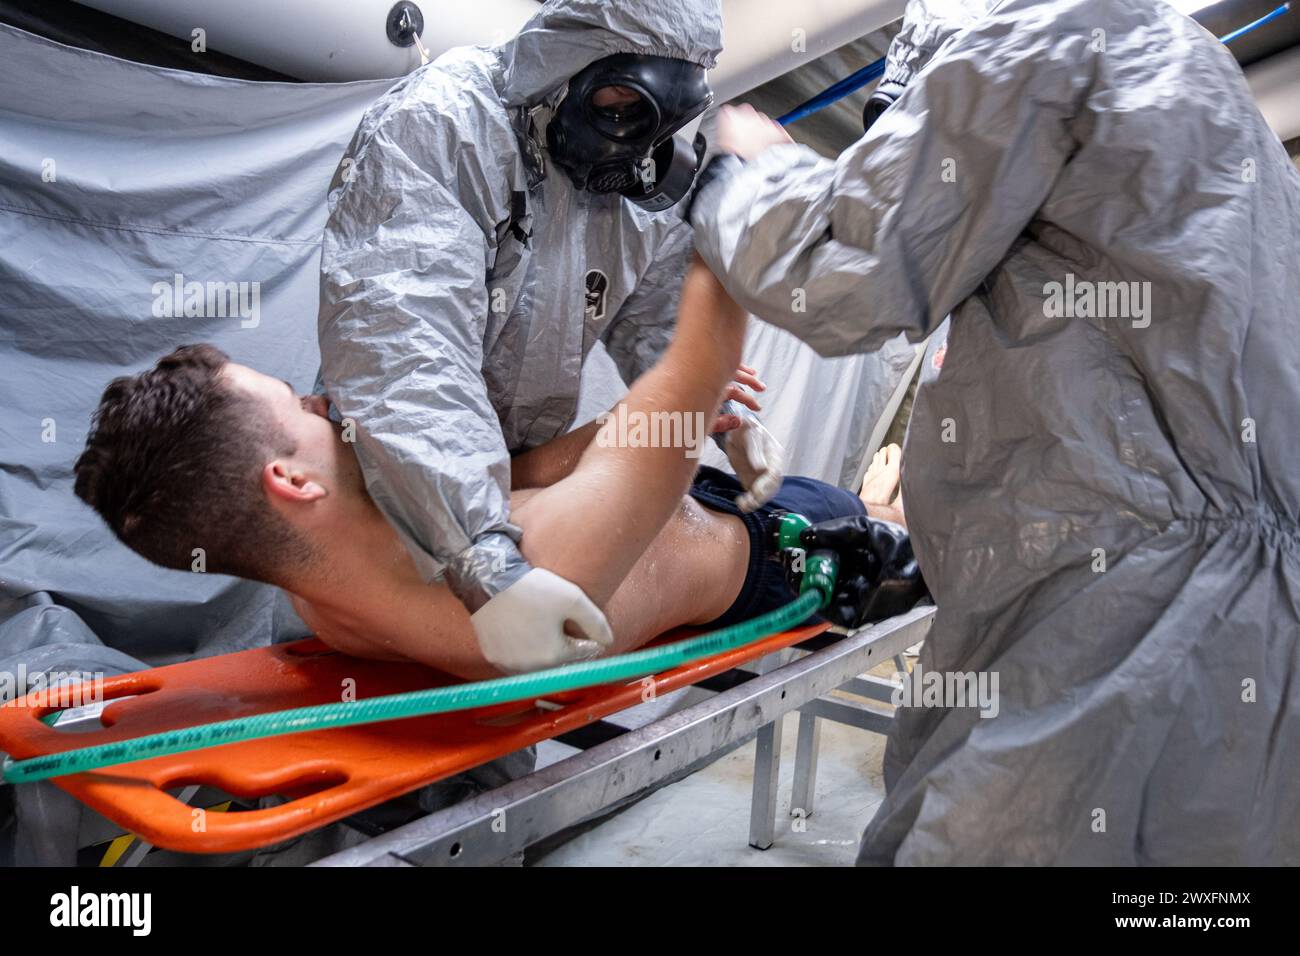 Ein Mann in einem Krankenhausbett wird von zwei Männern in Gefahrenanzügen behandelt. Die Szene ist angespannt und ernst, da die Männer Schutzkleidung tragen und arbeiten Stockfoto